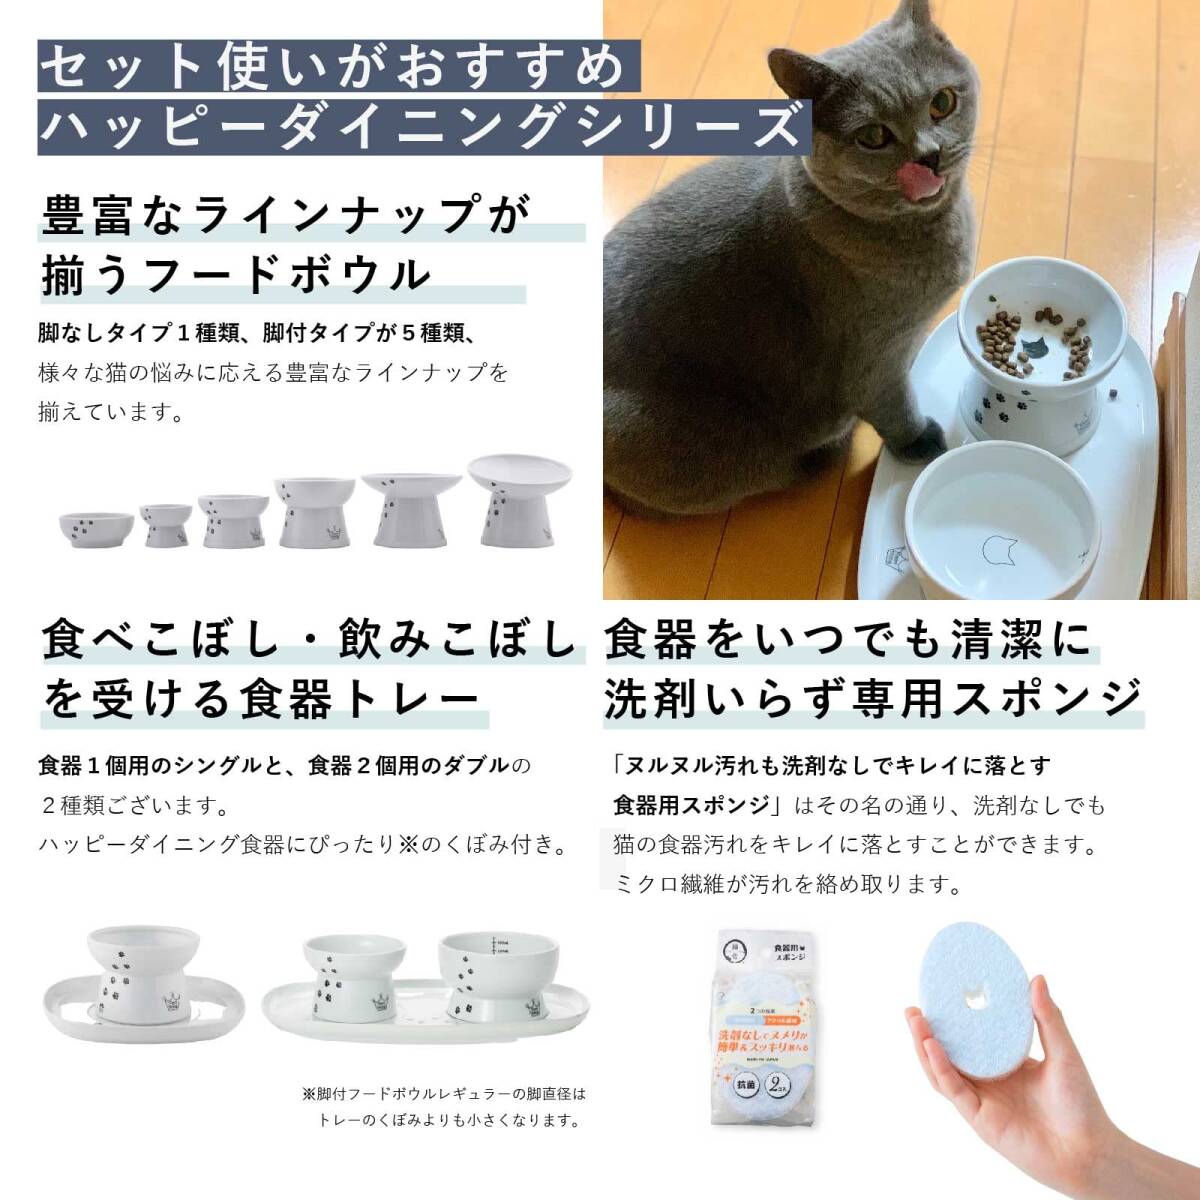  кошка .(necoichi) happy обеденный кошка для ножек есть вода миска высокий кошка рисунок скольжение прекращение силикон имеется 